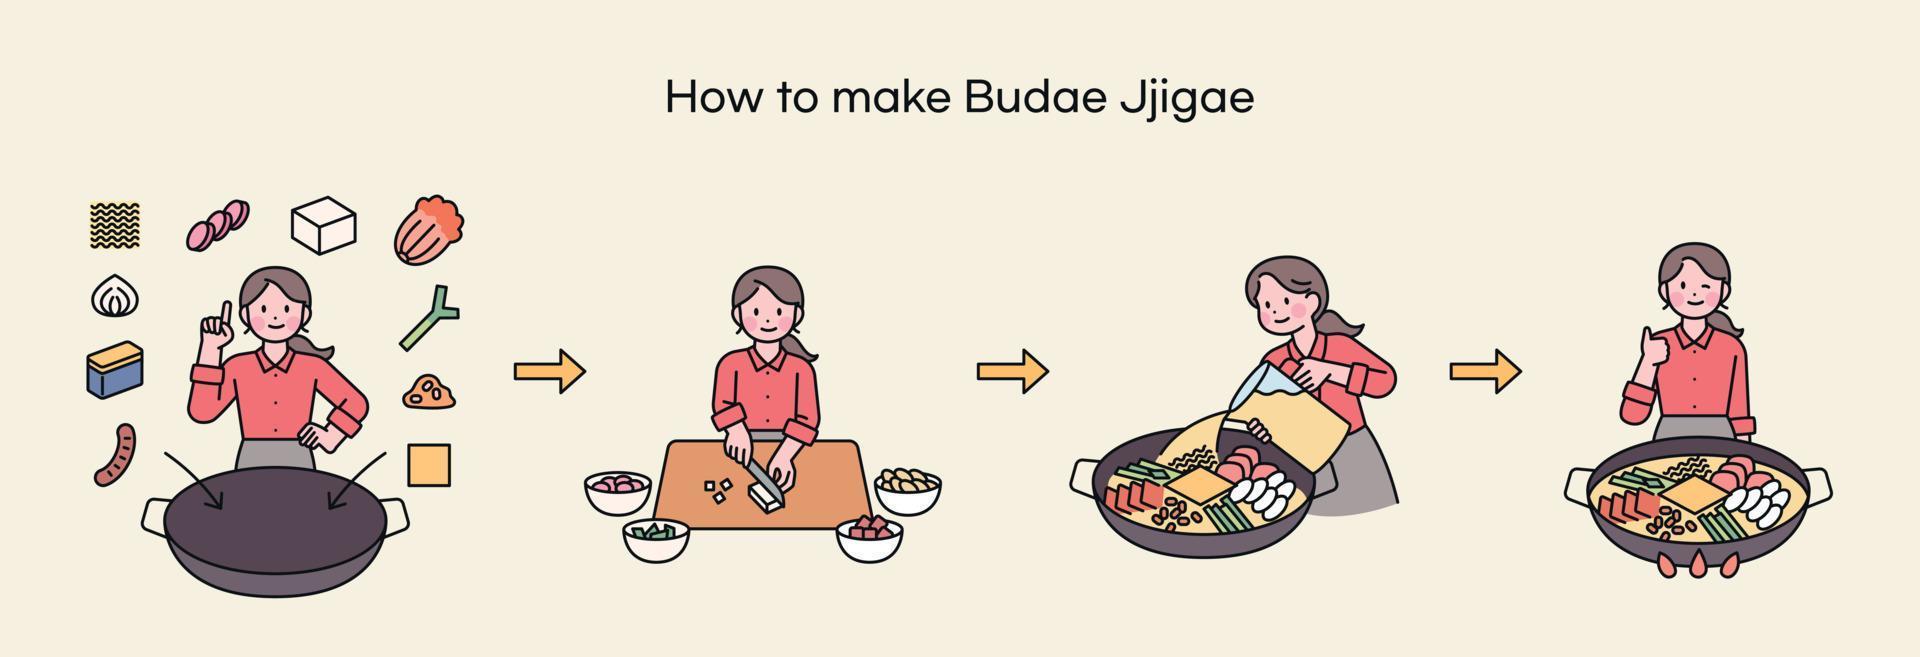 budae-jjigae, en mat stupade i koreanska historia. en kock förklarar på vilket sätt till göra budae-jjigae. vektor